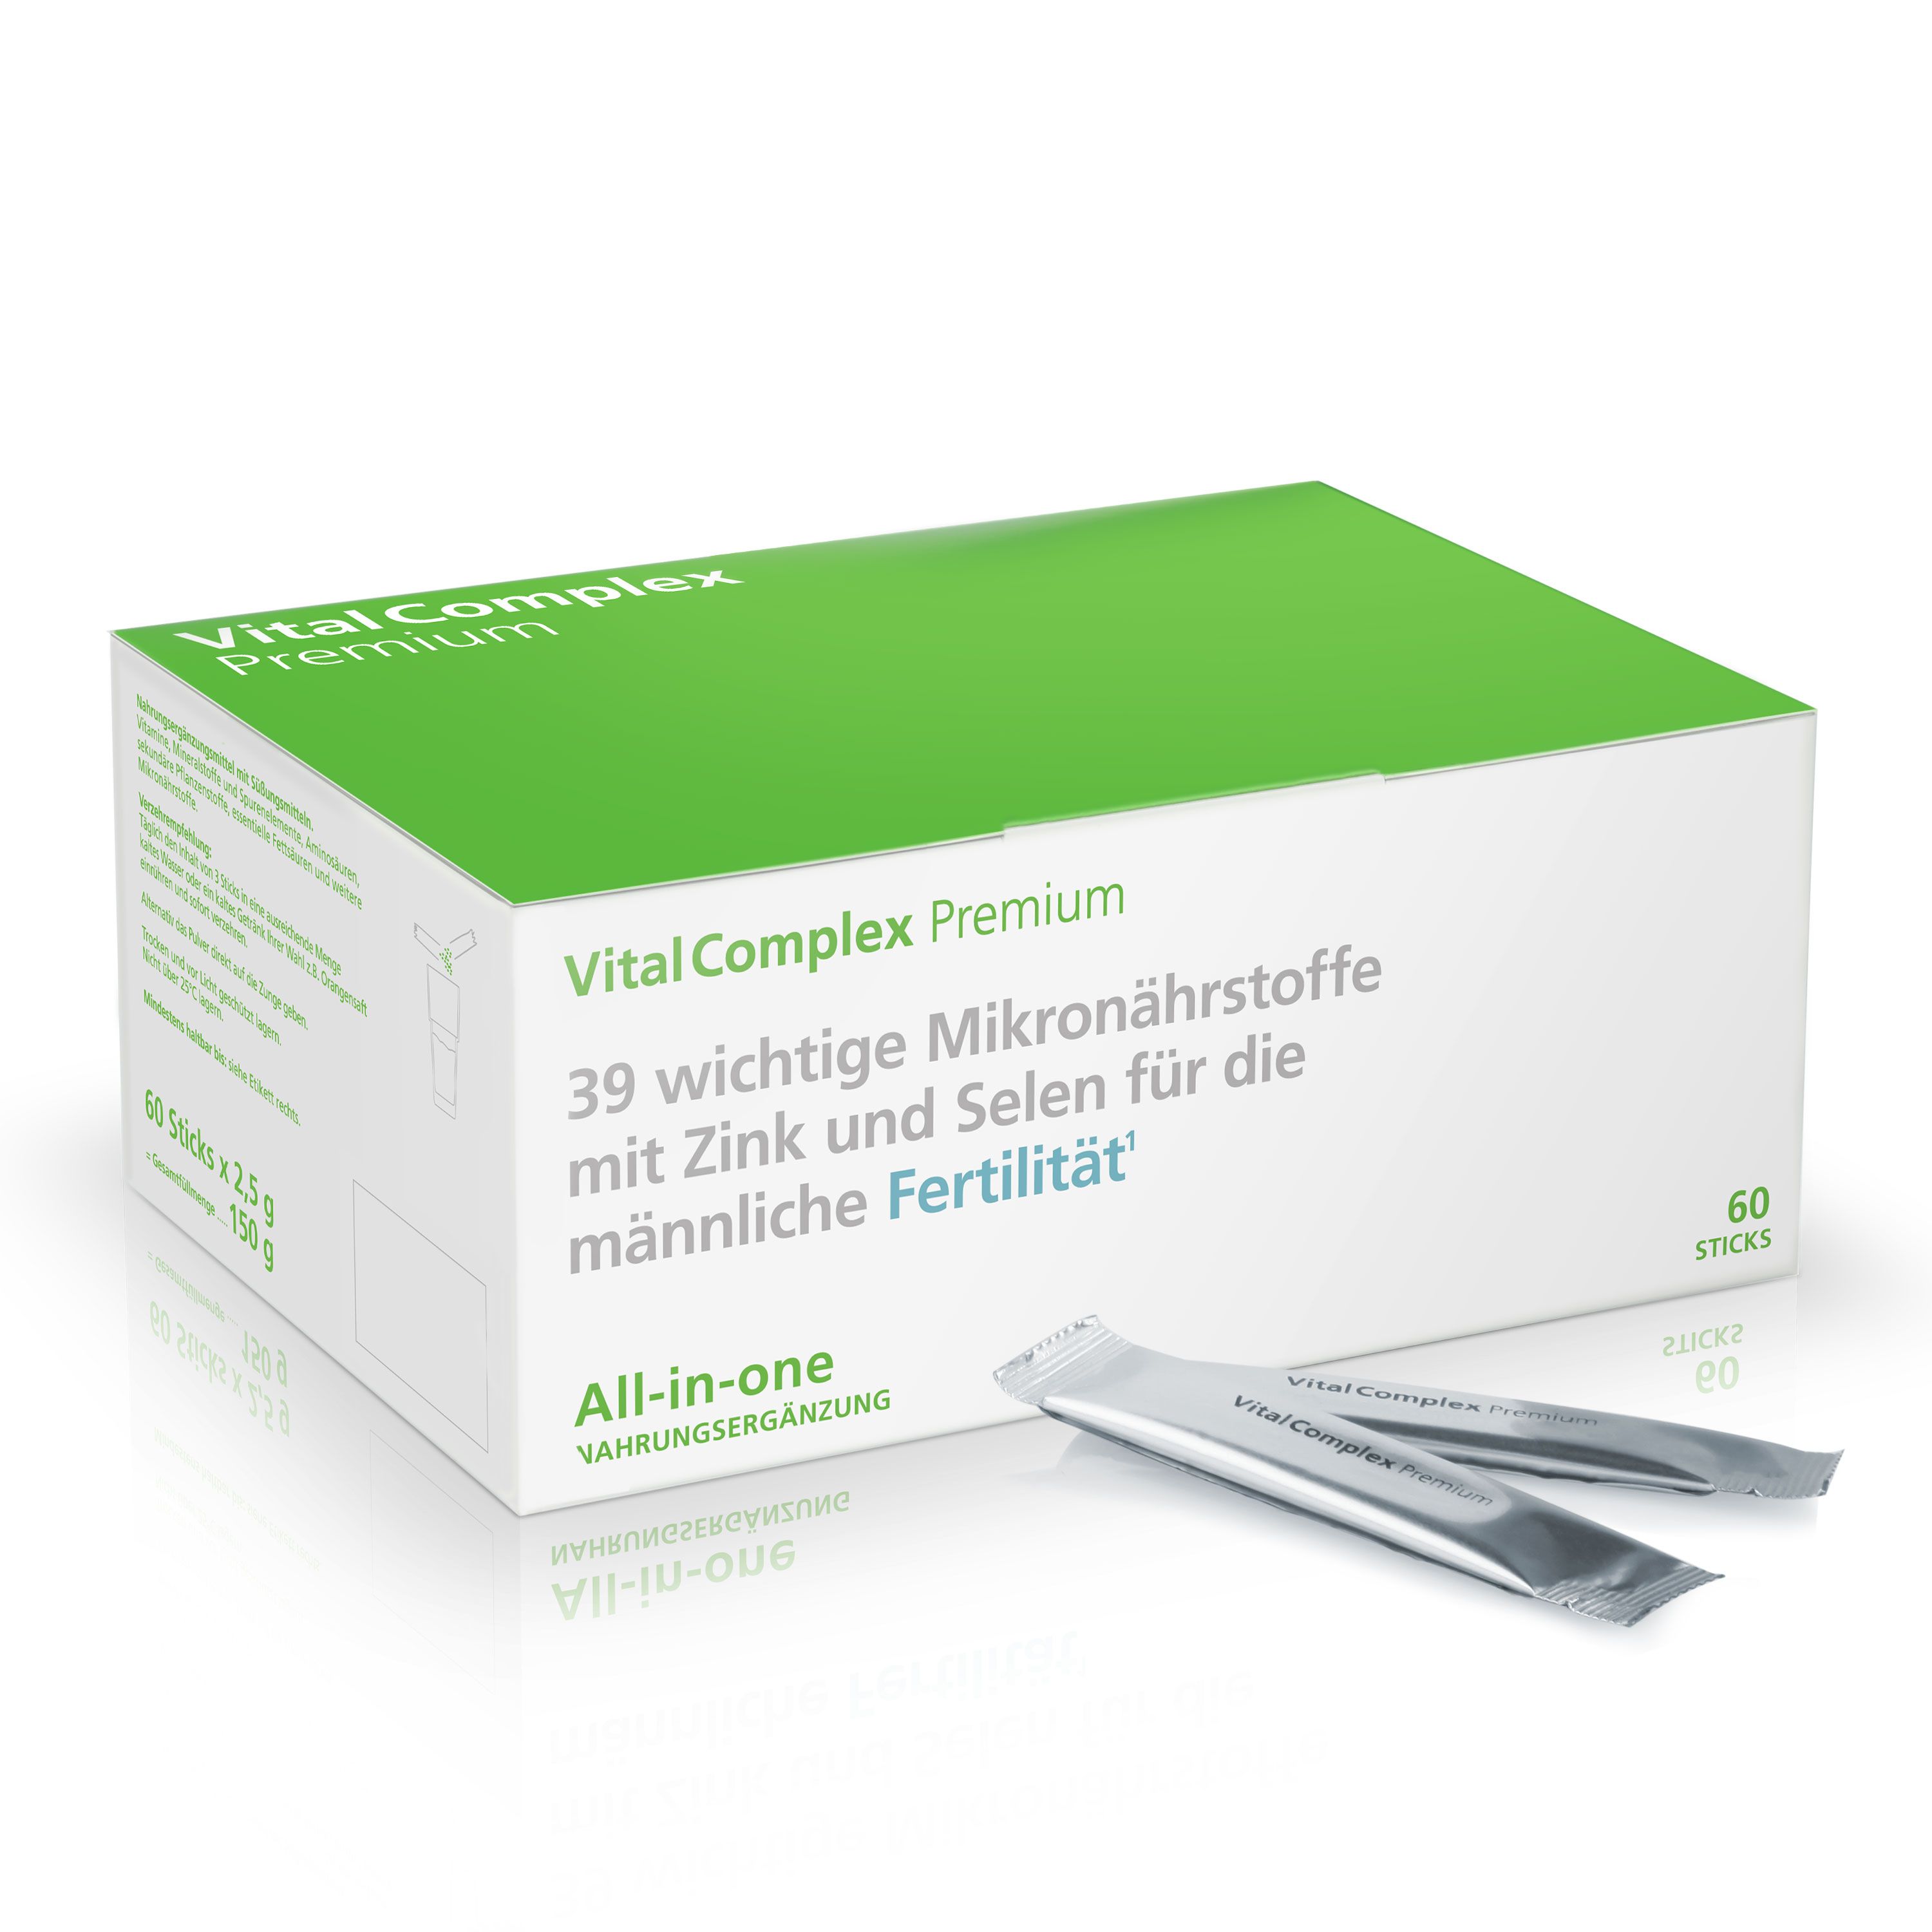 VitalComplex Premium mit Zink & Selen für die männliche Fertilität / bei Kinderwunsch